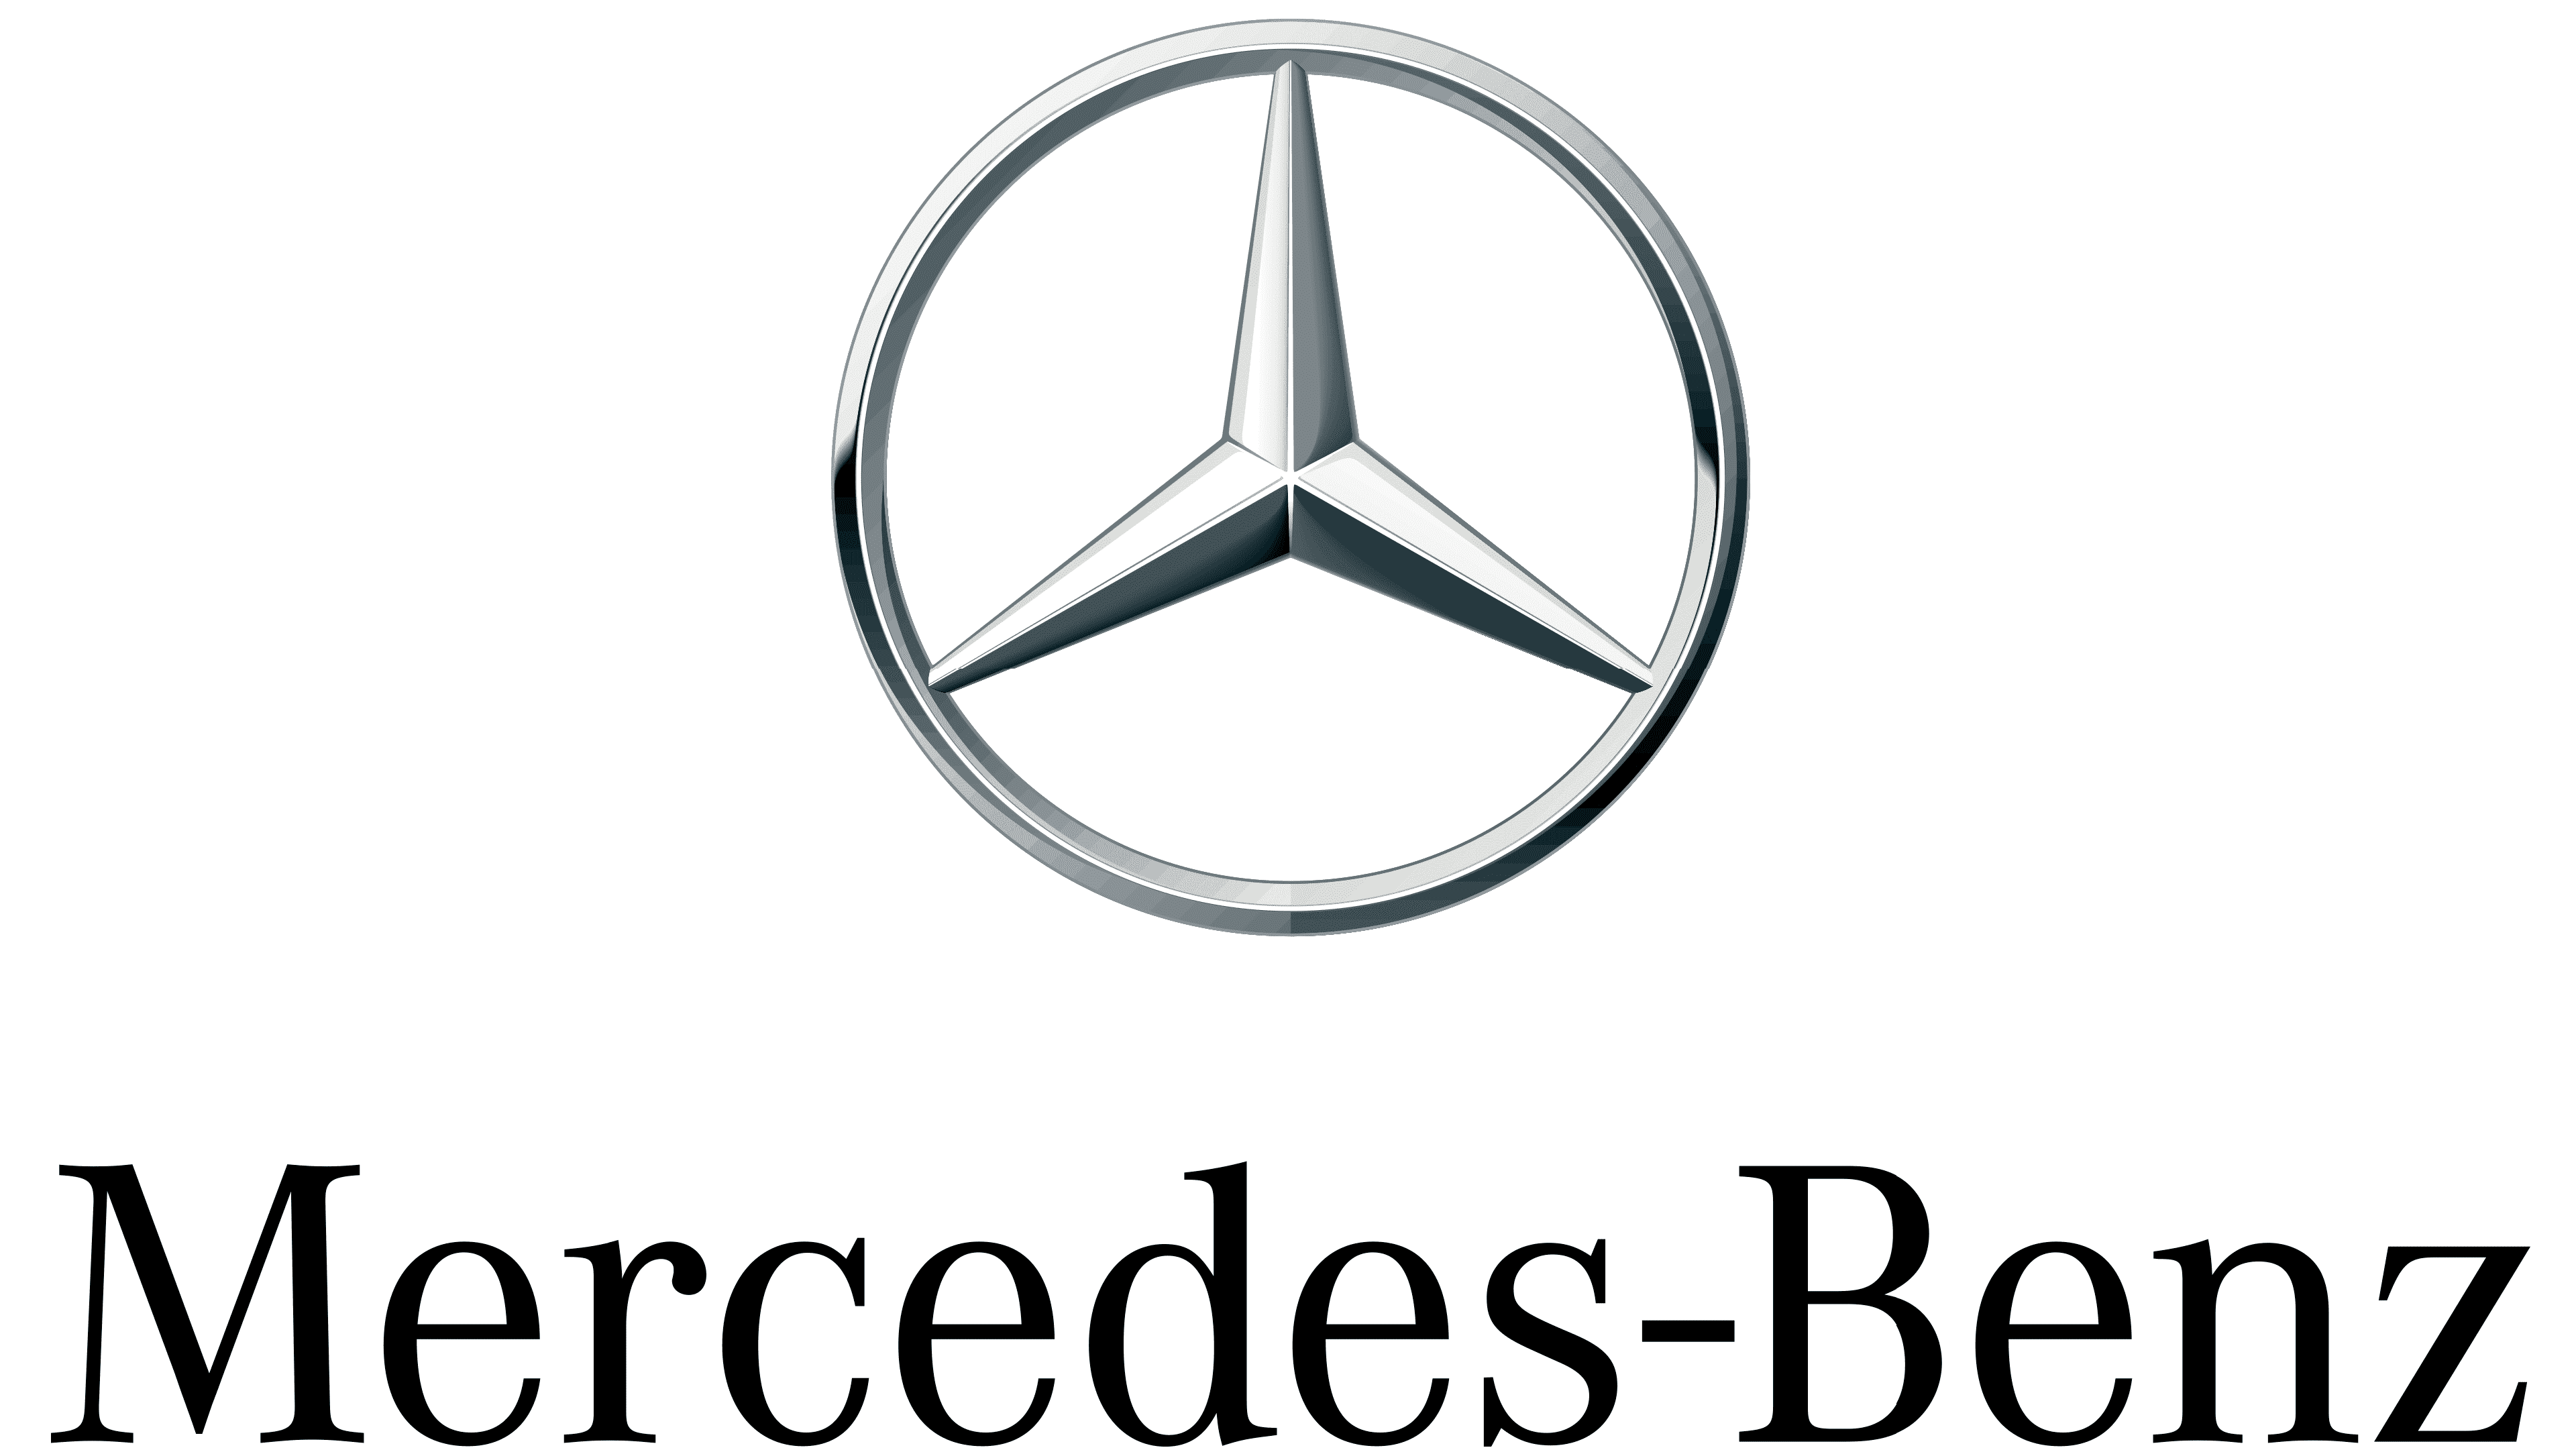 Quelles sont les valeurs du logo Mercedes ?